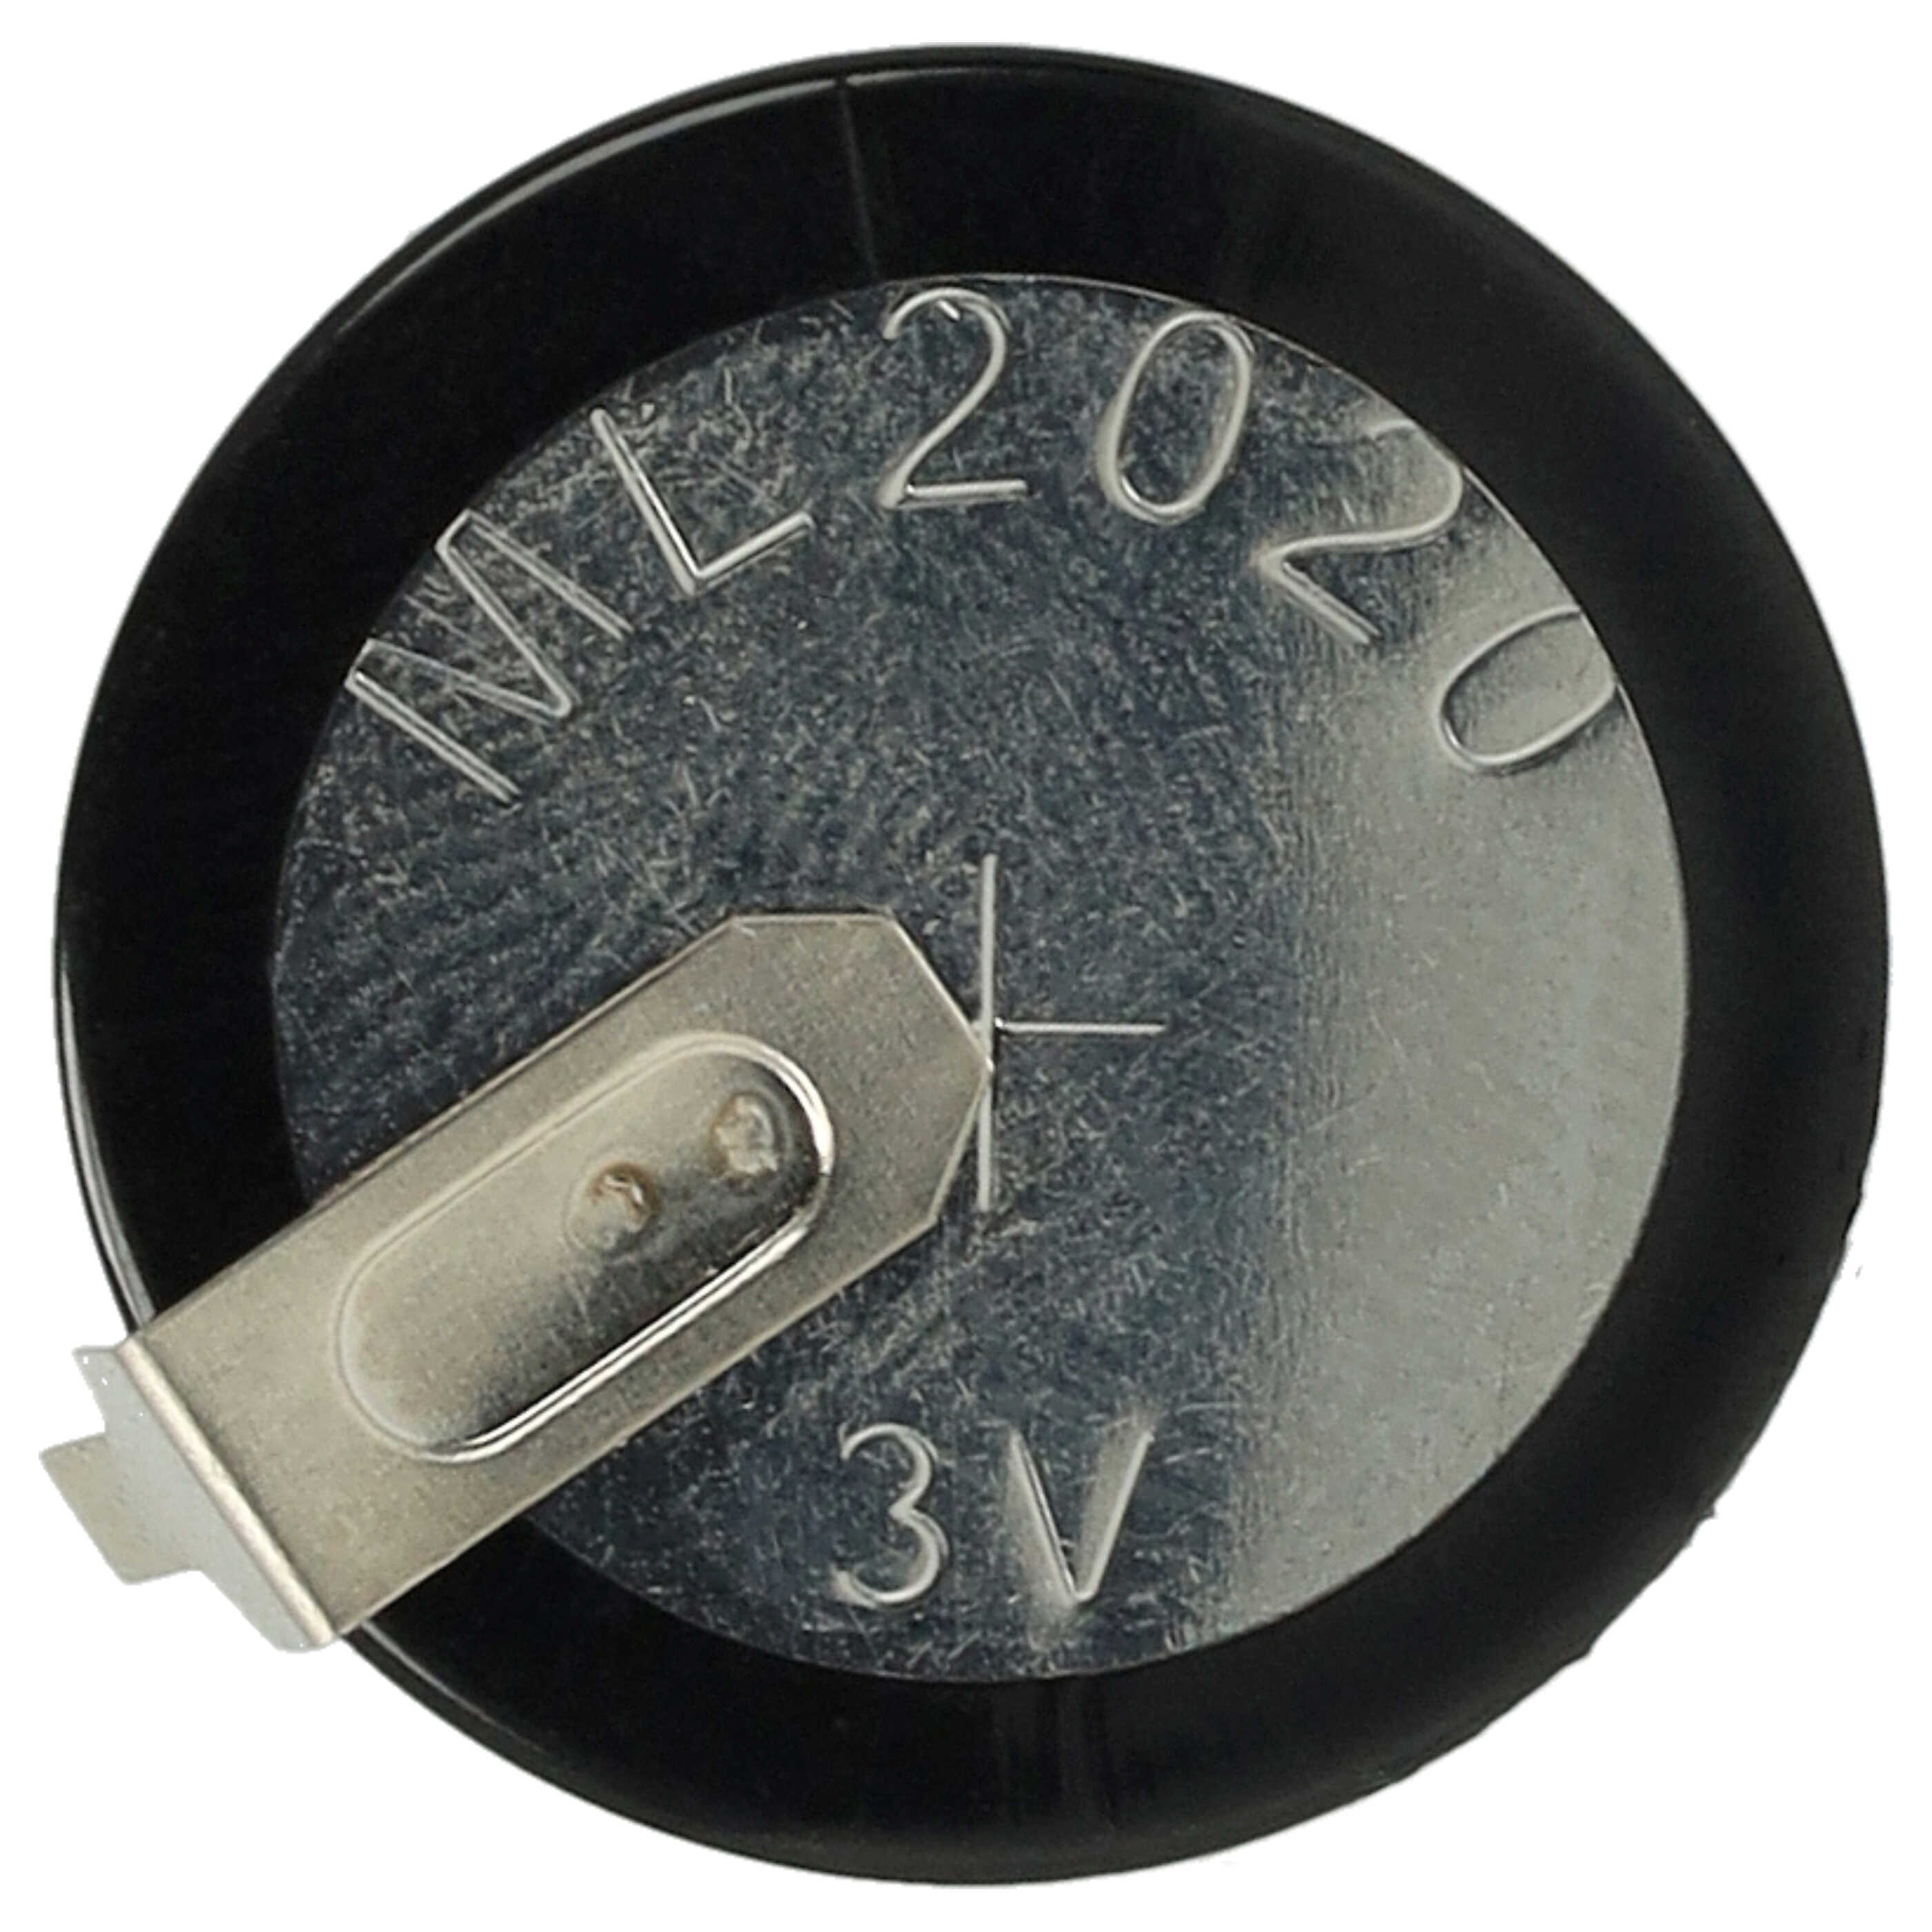 Batteria per chiavi dell'auto Land Rover - 20mAh 3,6V Li-Ion